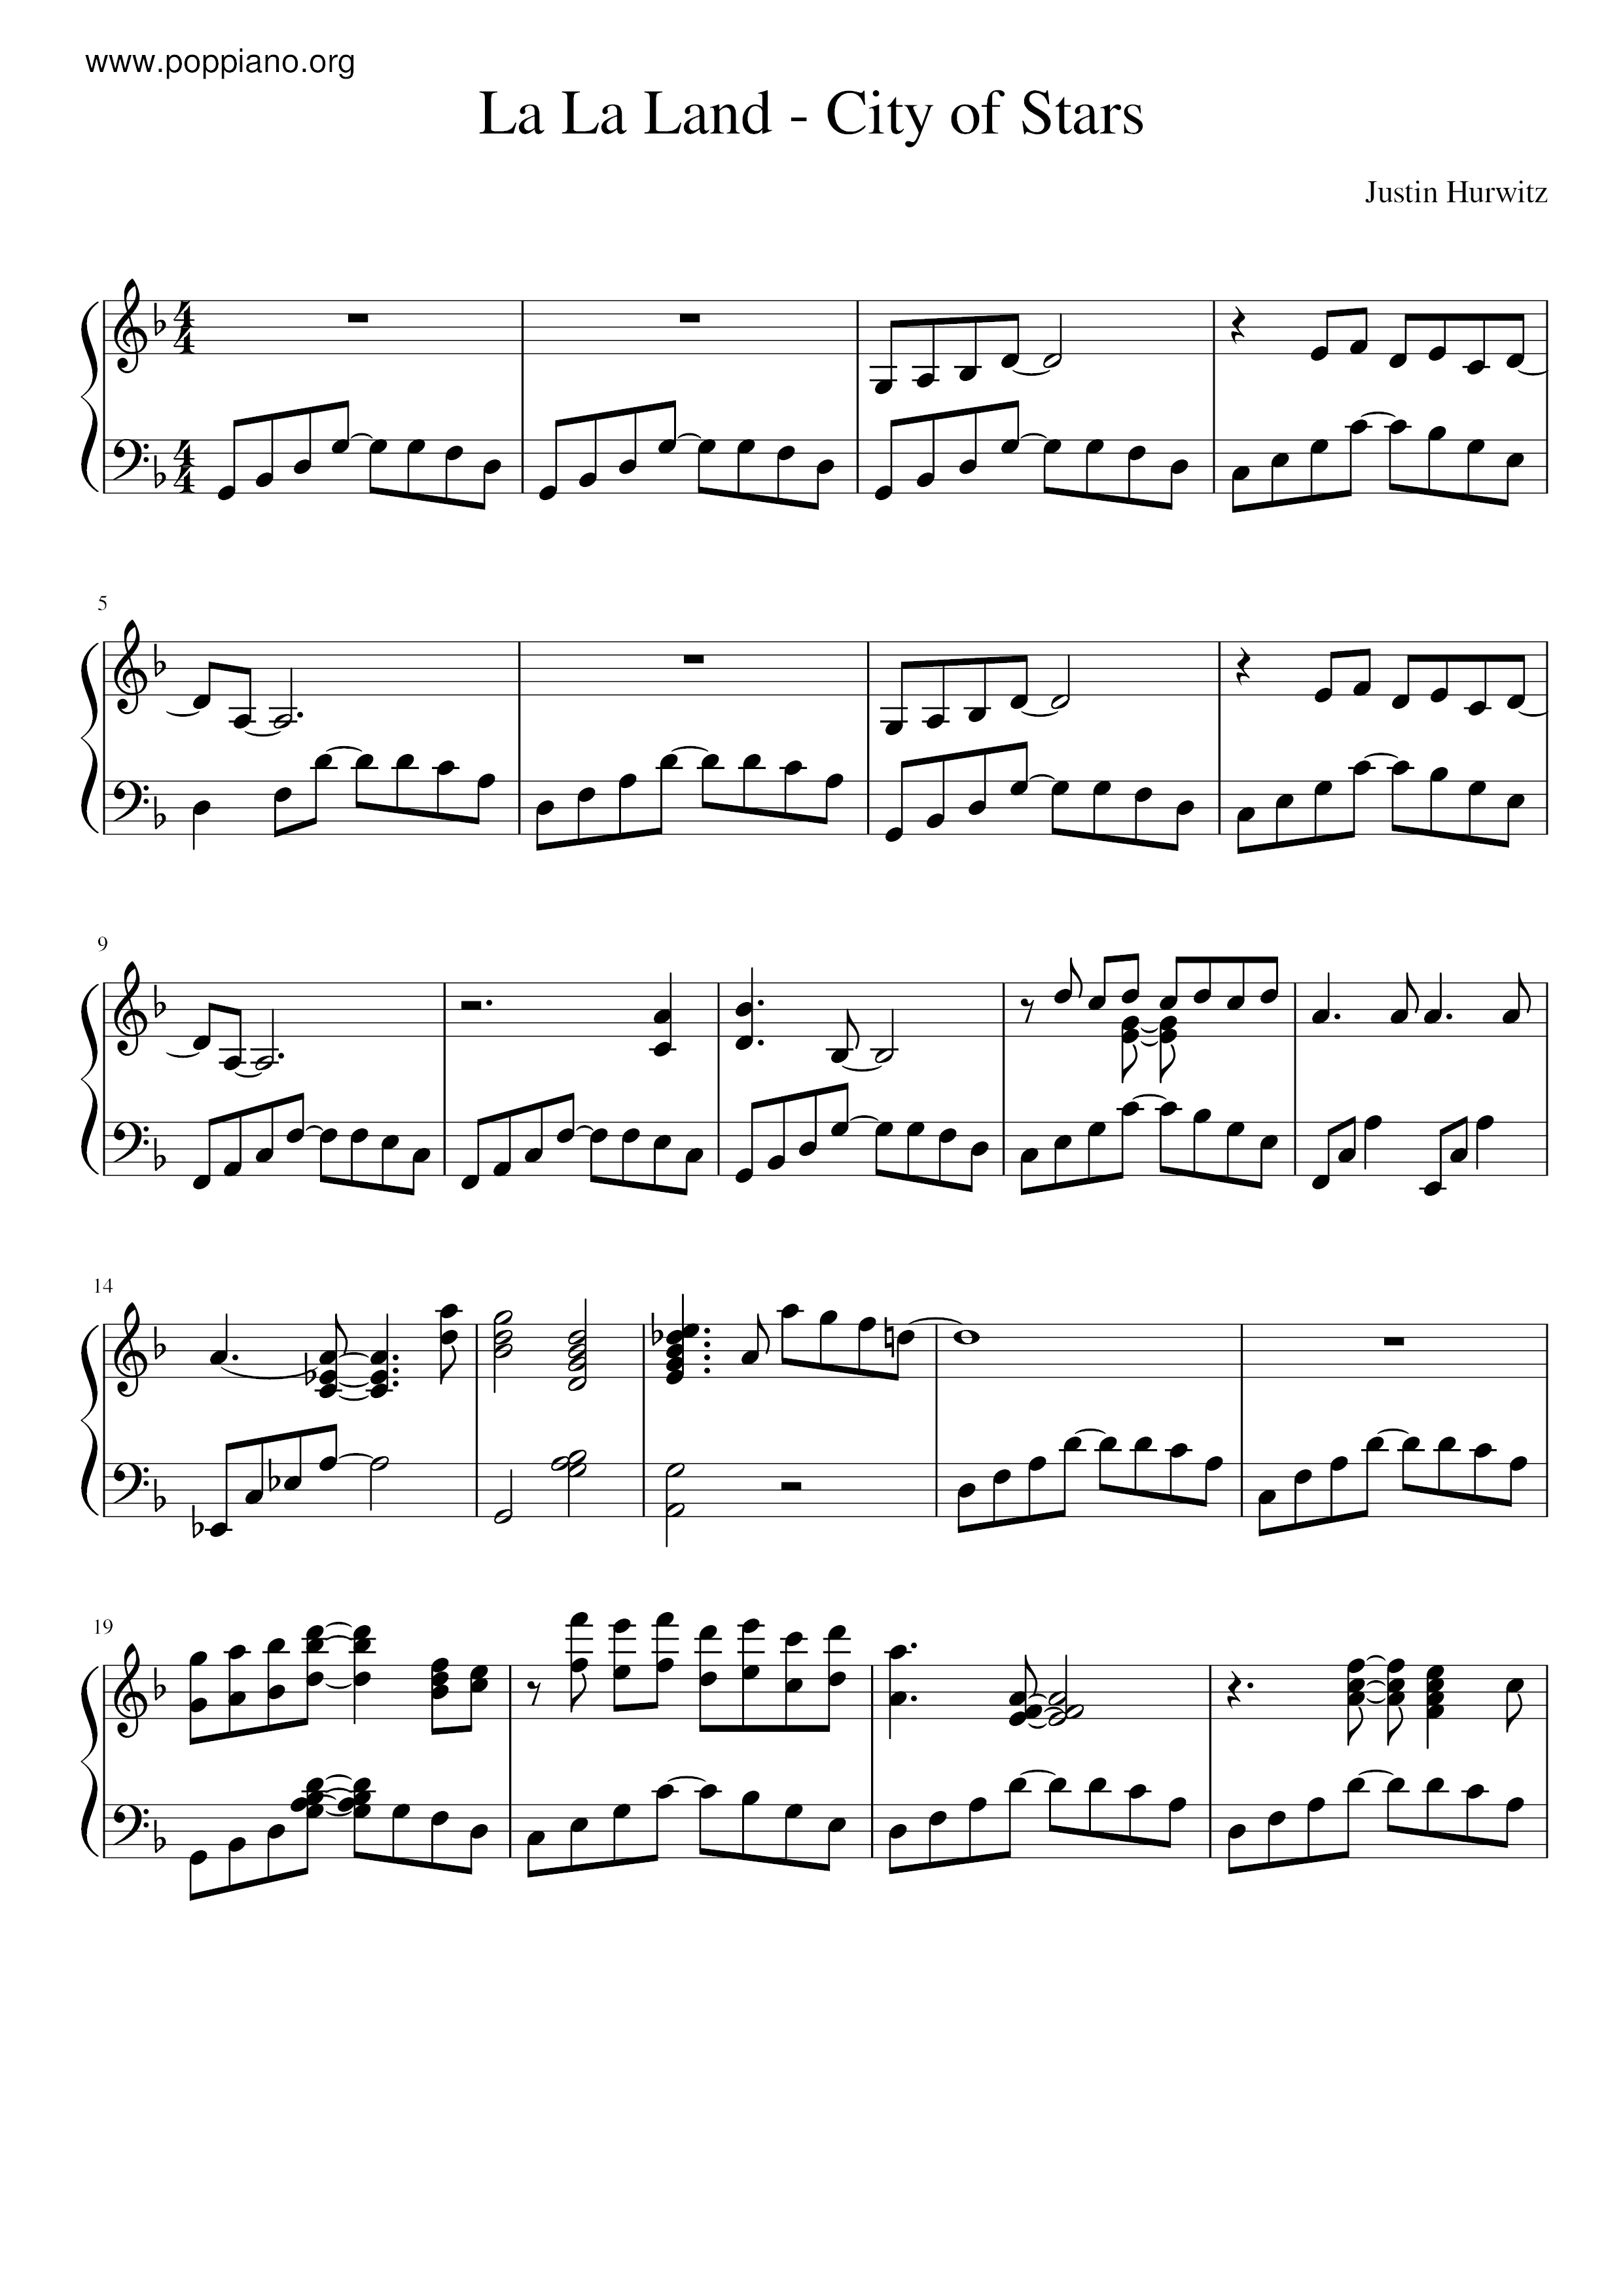 ☆ La La Land - City Of Stars | Sheet Music | Piano Score Free PDF